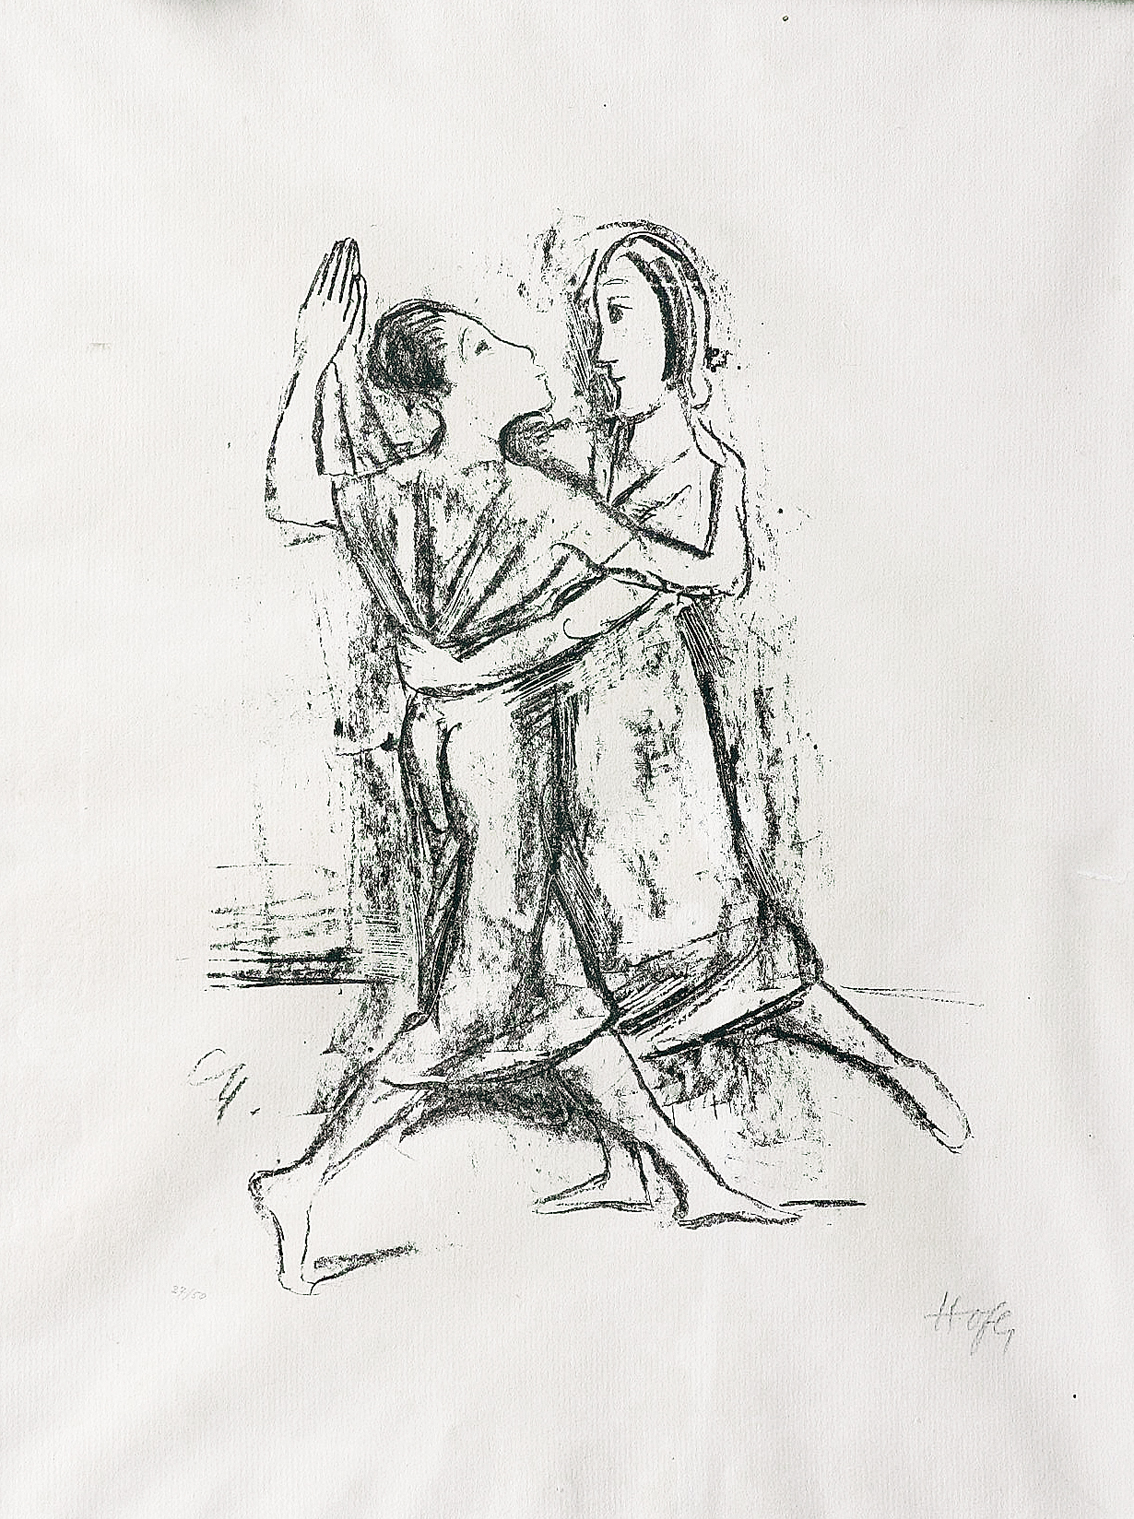 "Two dancing women"